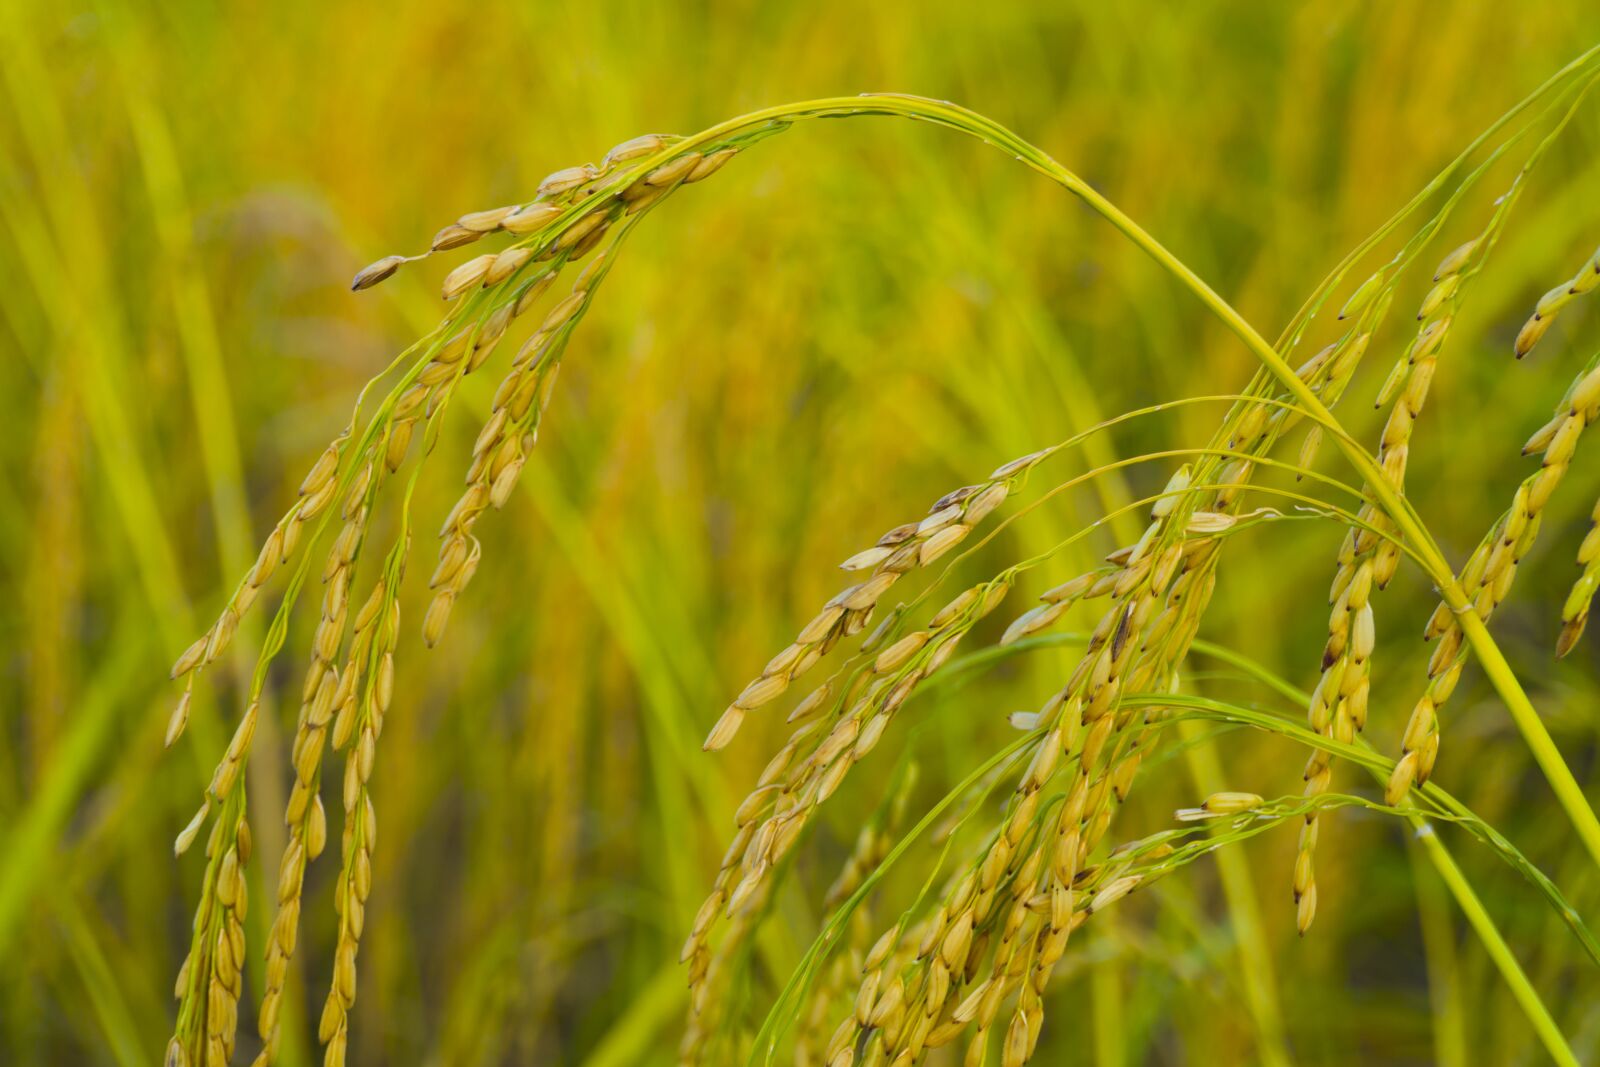 Sony a6400 sample photo. Rice, farm, agriculture photography